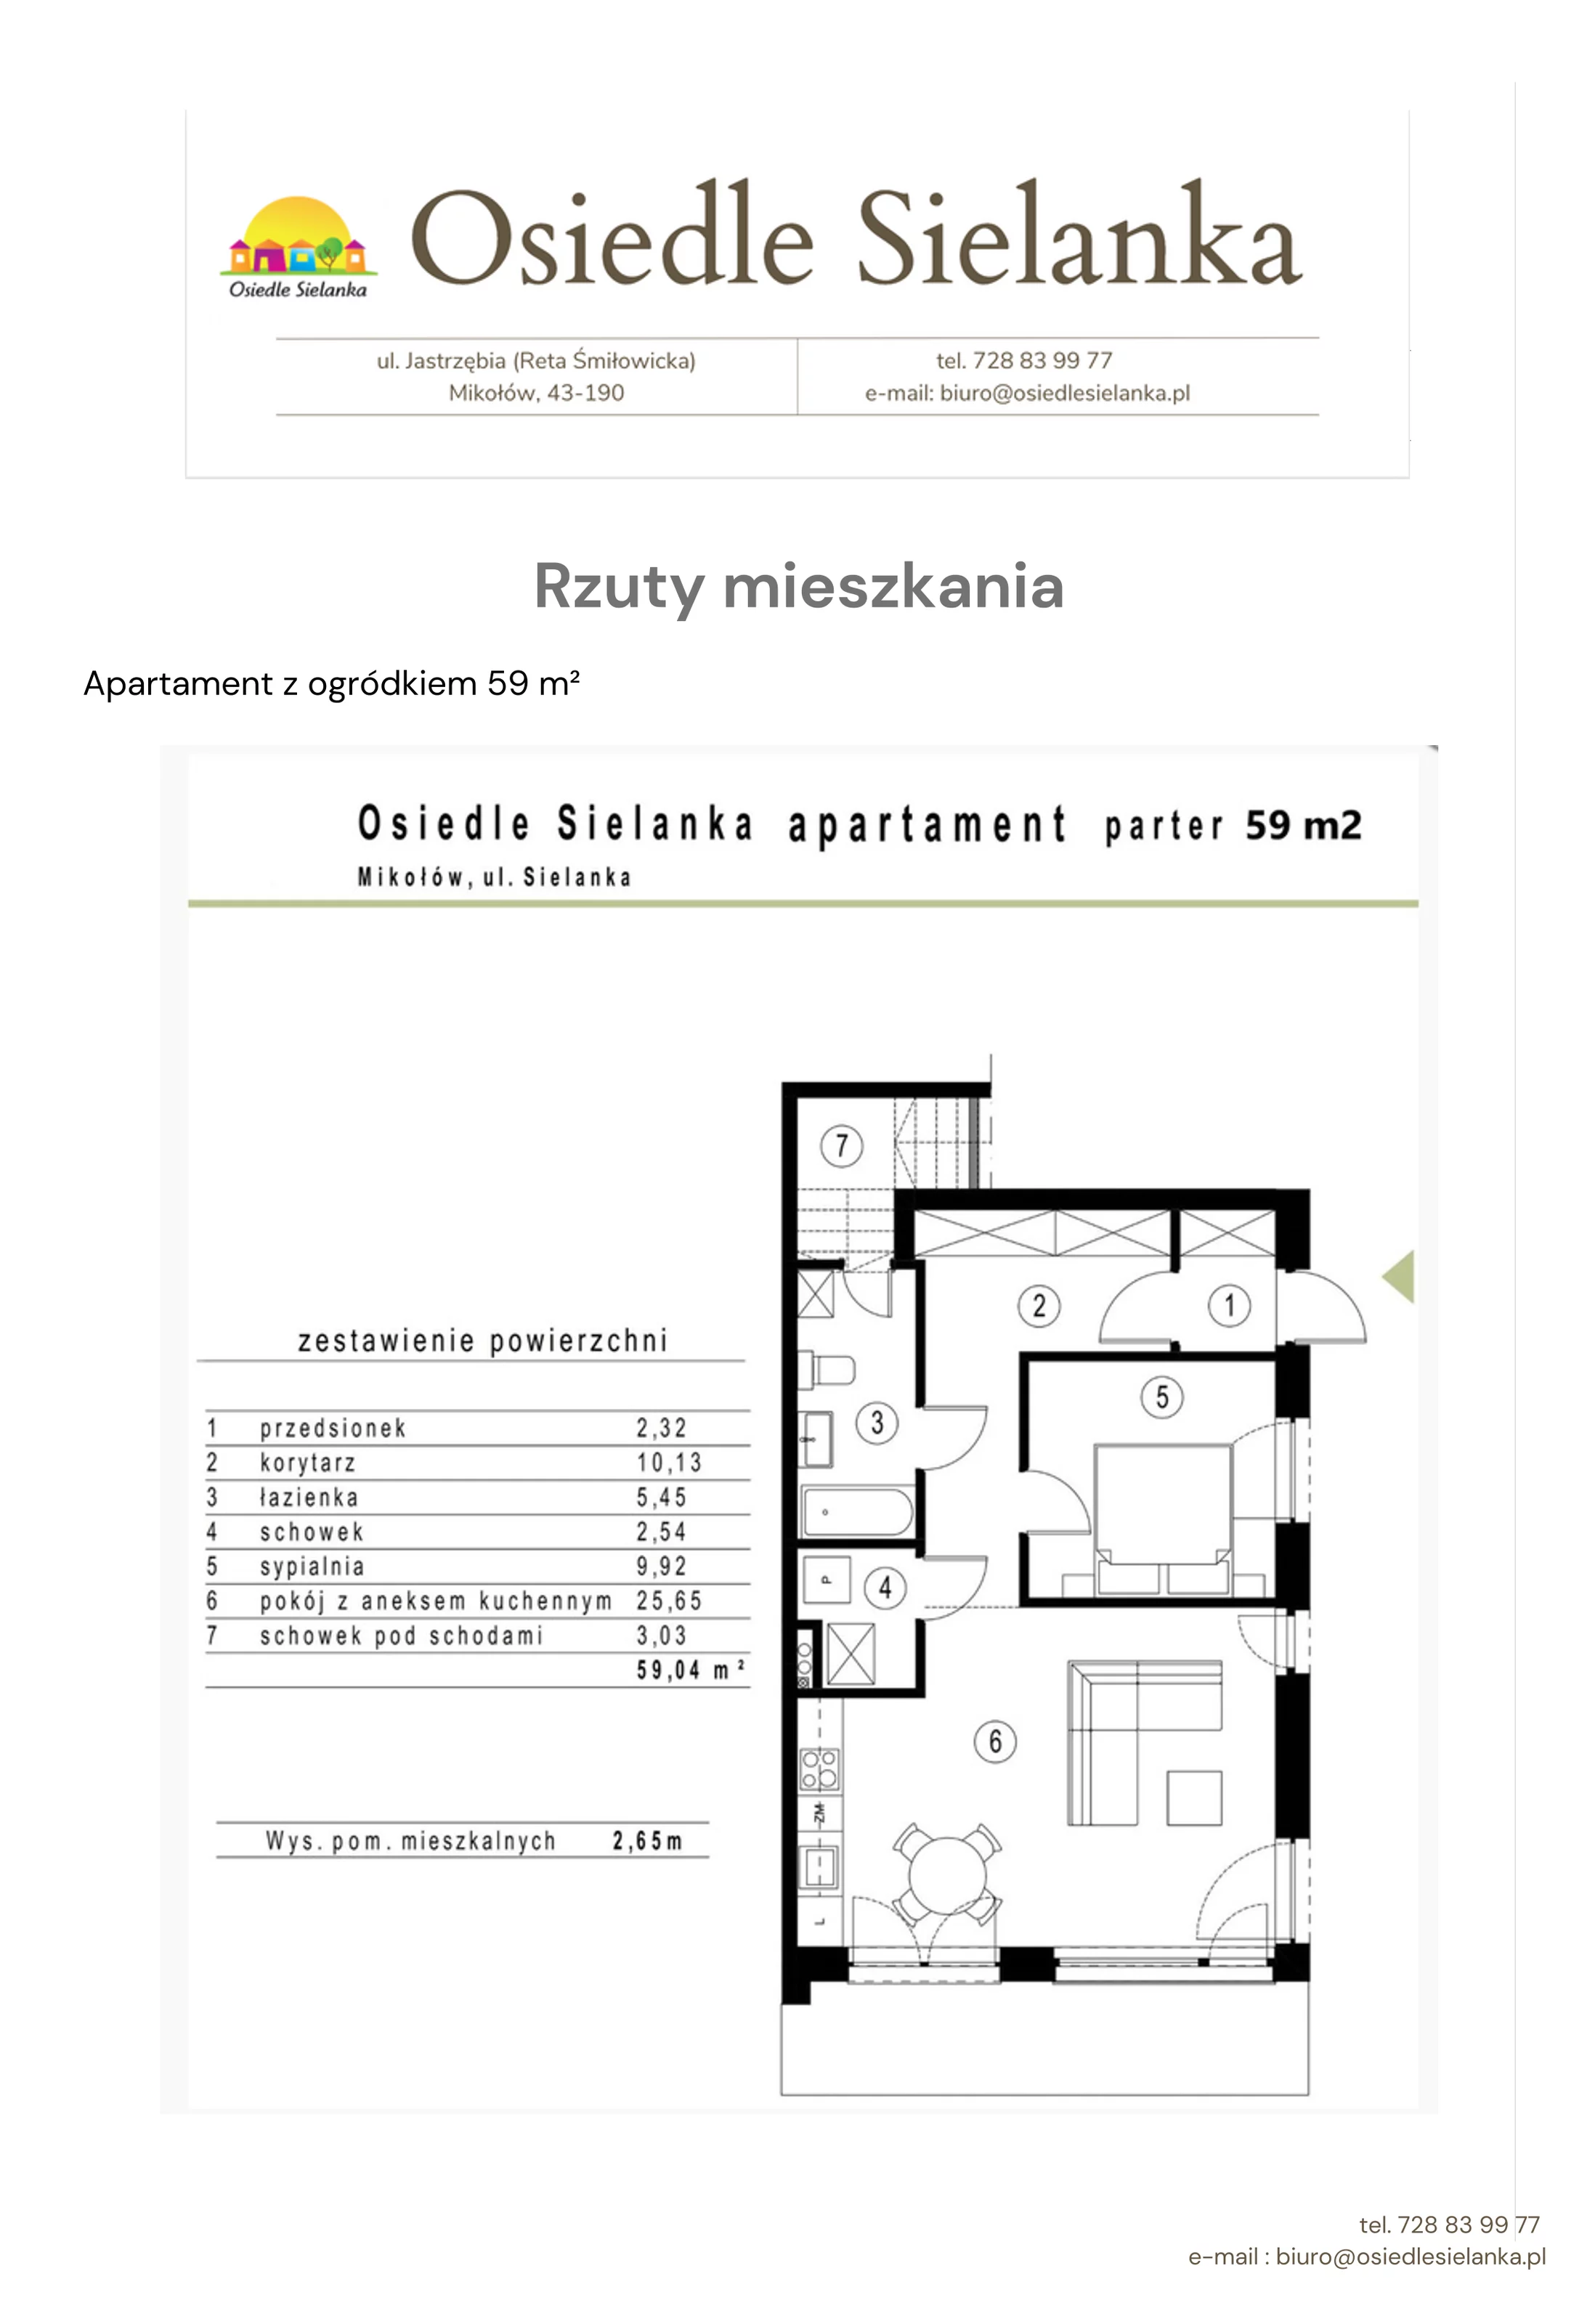 Apartament 71,00 m², parter, oferta nr apartament z ogródkiem 3 pok., Osiedle Sielanka Mikołów, Mikołów, Reta, ul. Jastrzębia